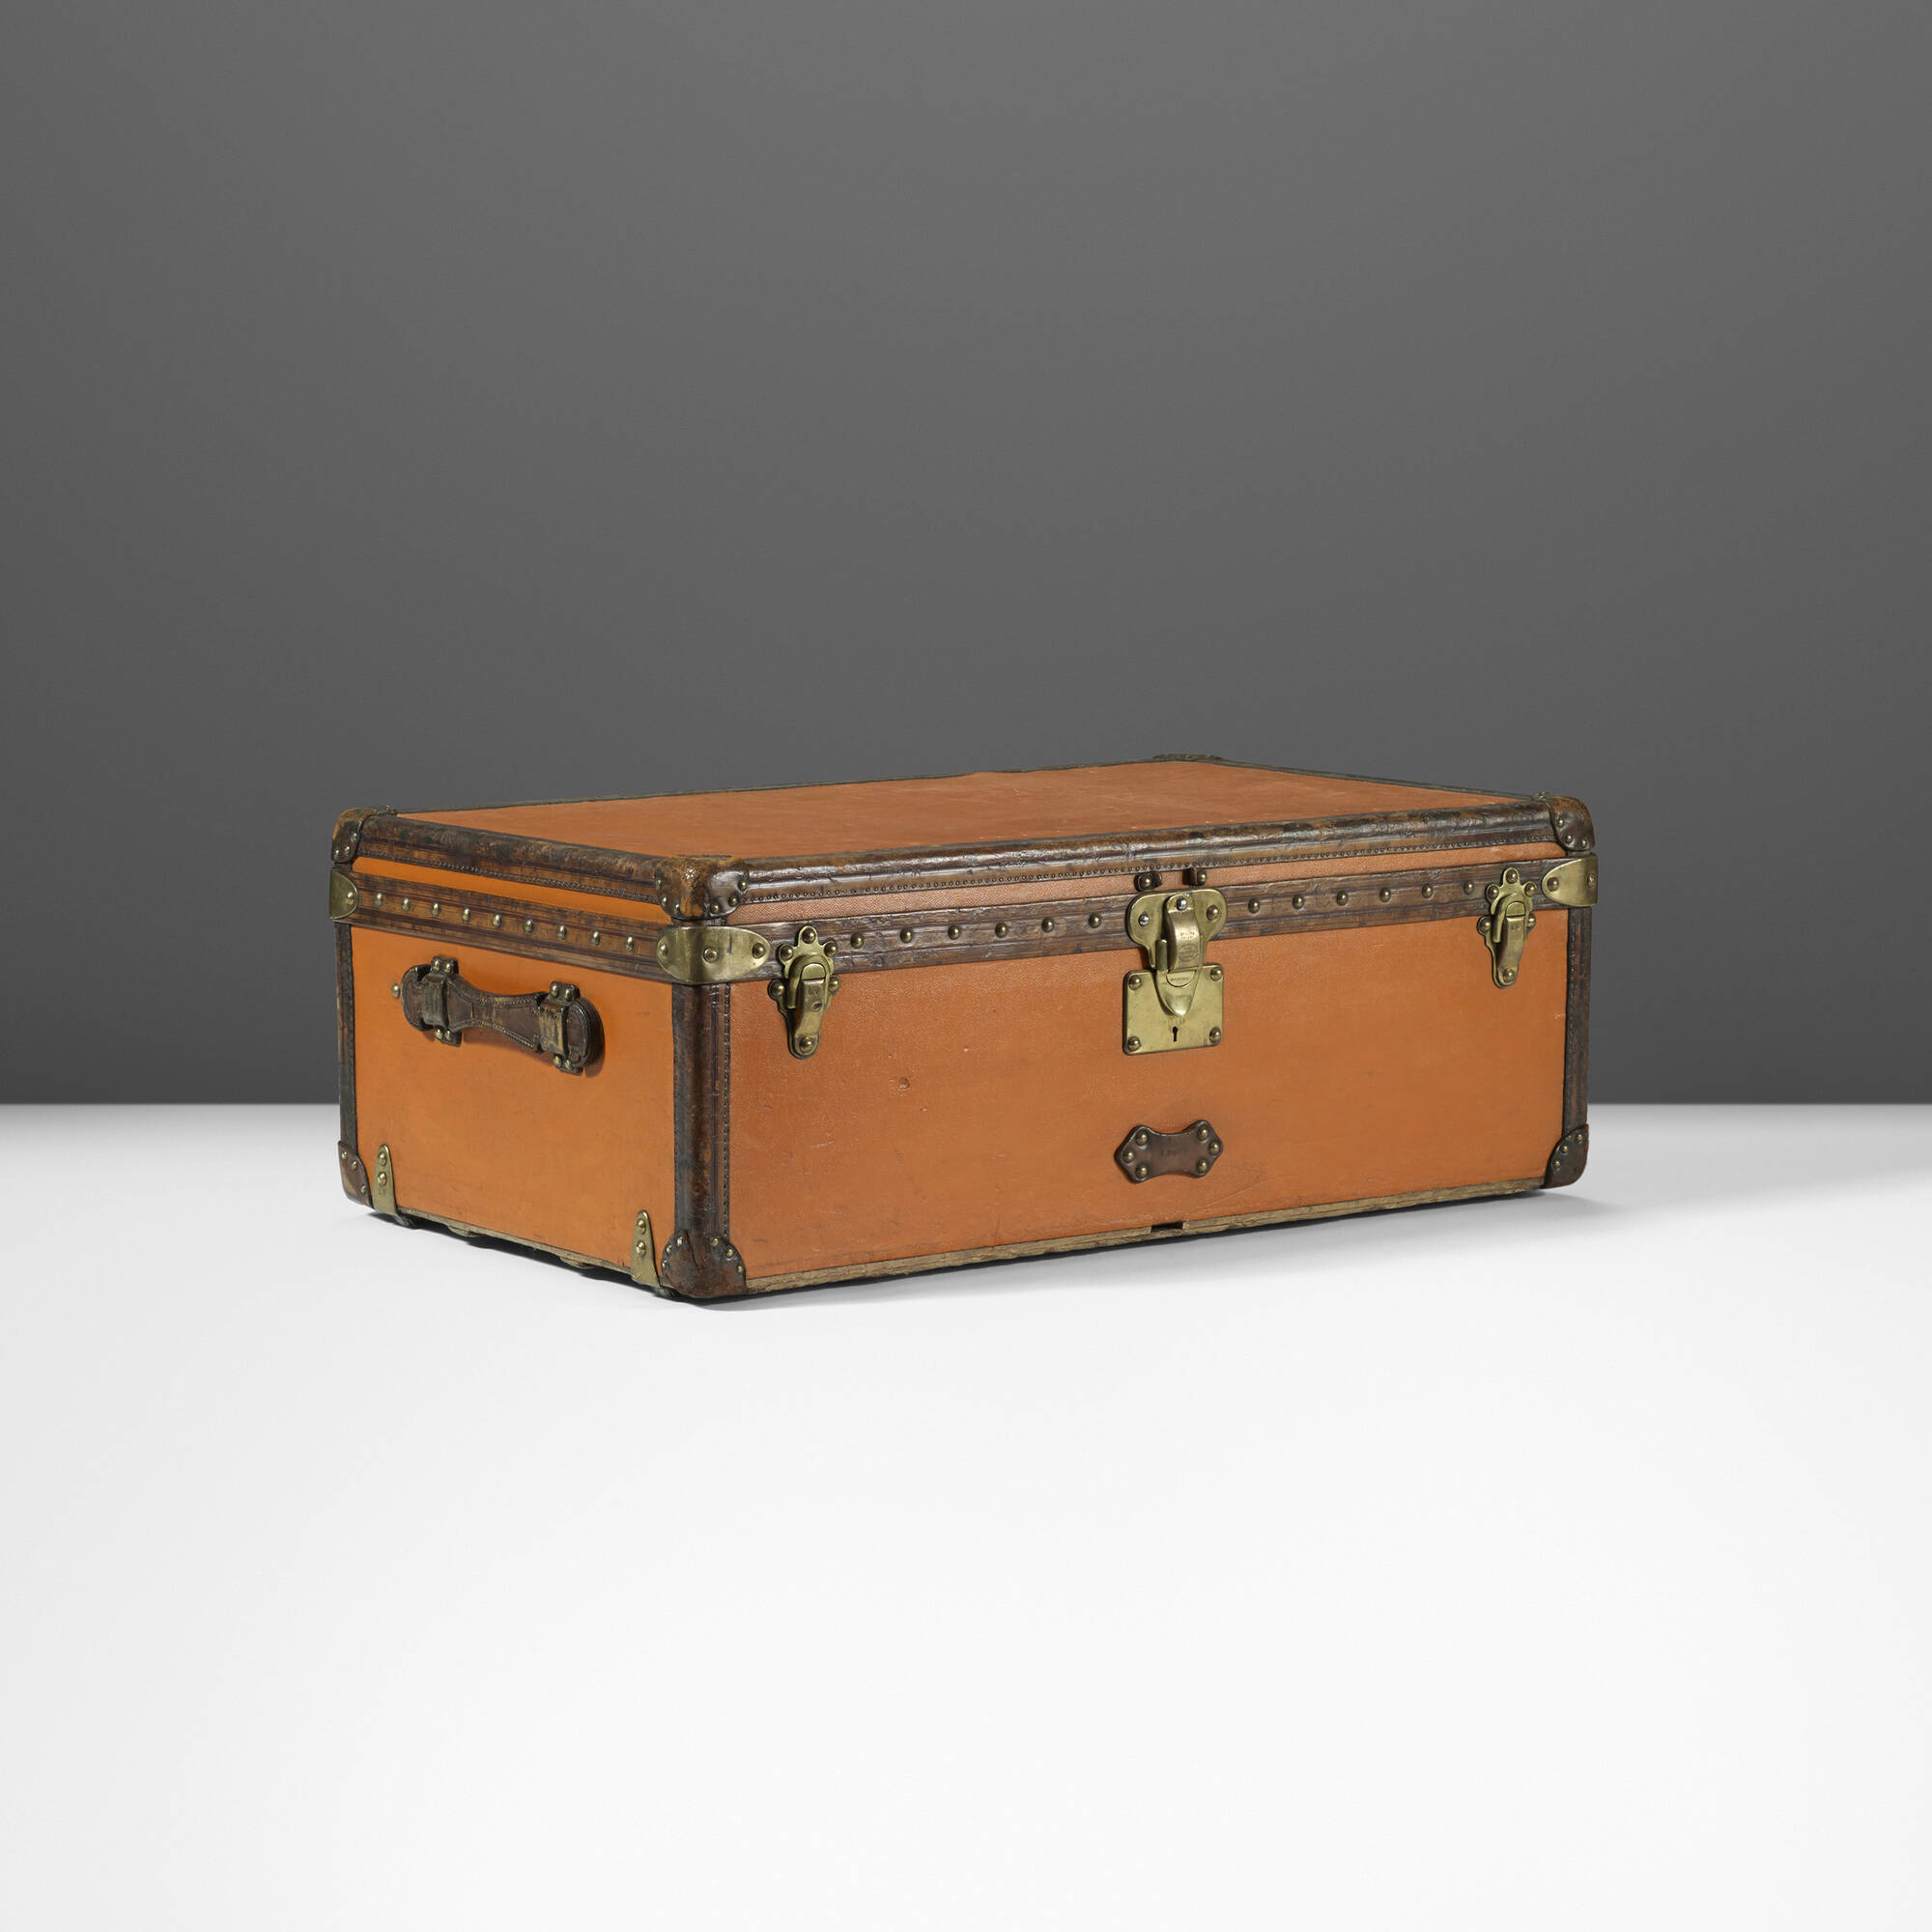 Sold at Auction: Louis Vuitton, Vintage Louis Vuitton suitcase